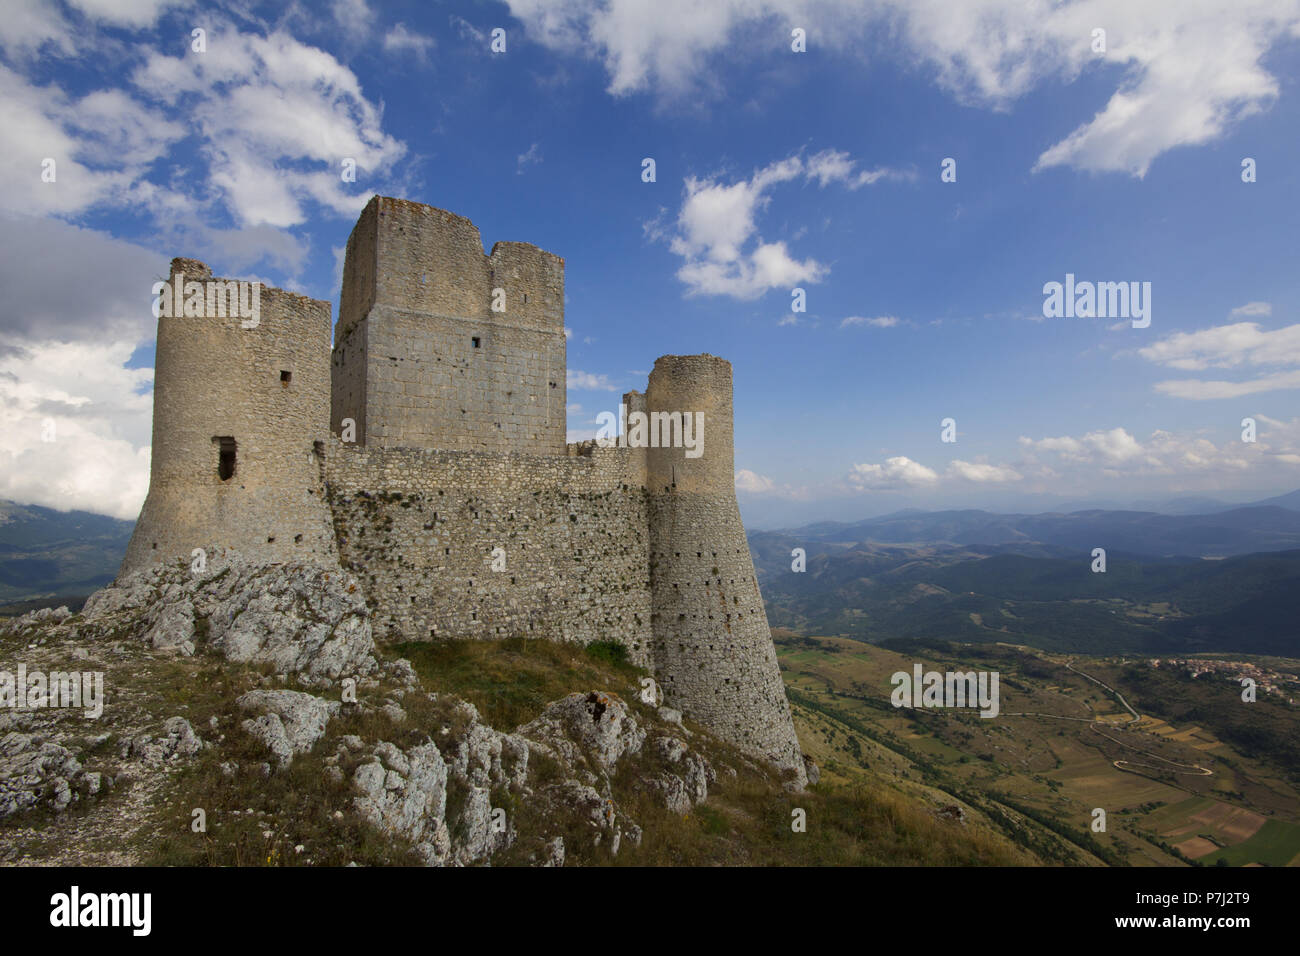 A Castle in the sky - The Lady Hawke Castle Rocca Calascio - Aquila - Italy Stock Photo